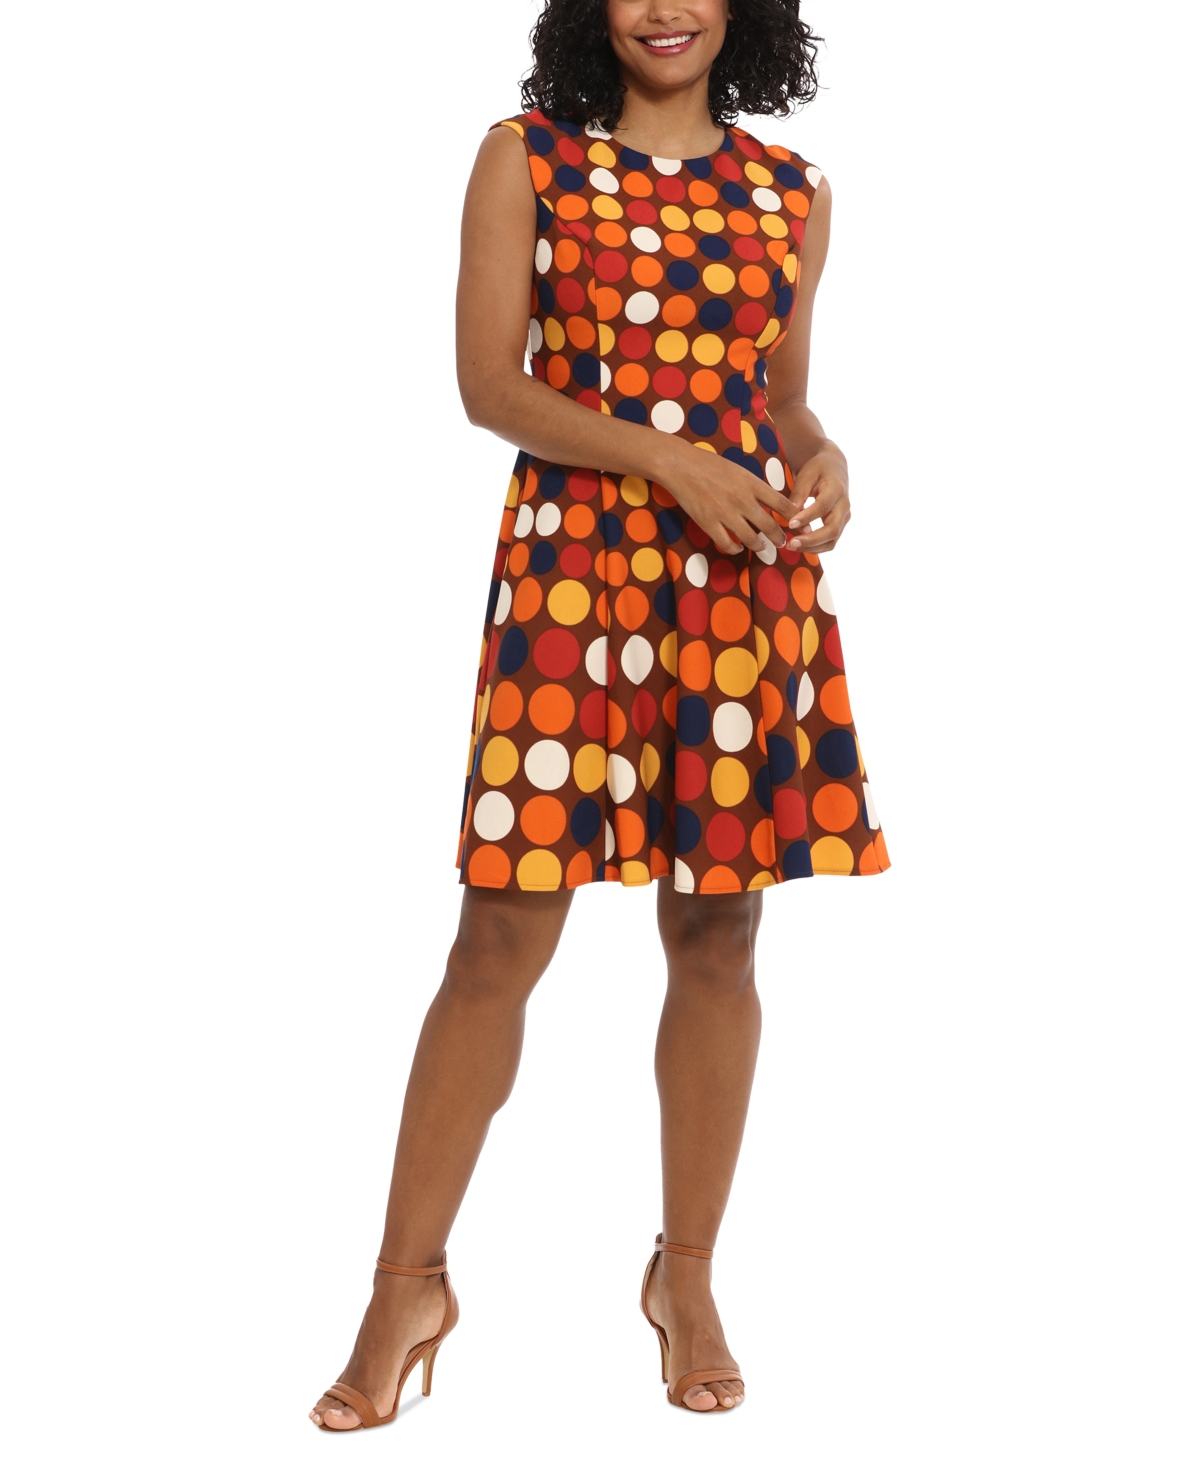 Women's Polka-Dot Fit & Flare Dress - Spice Multi